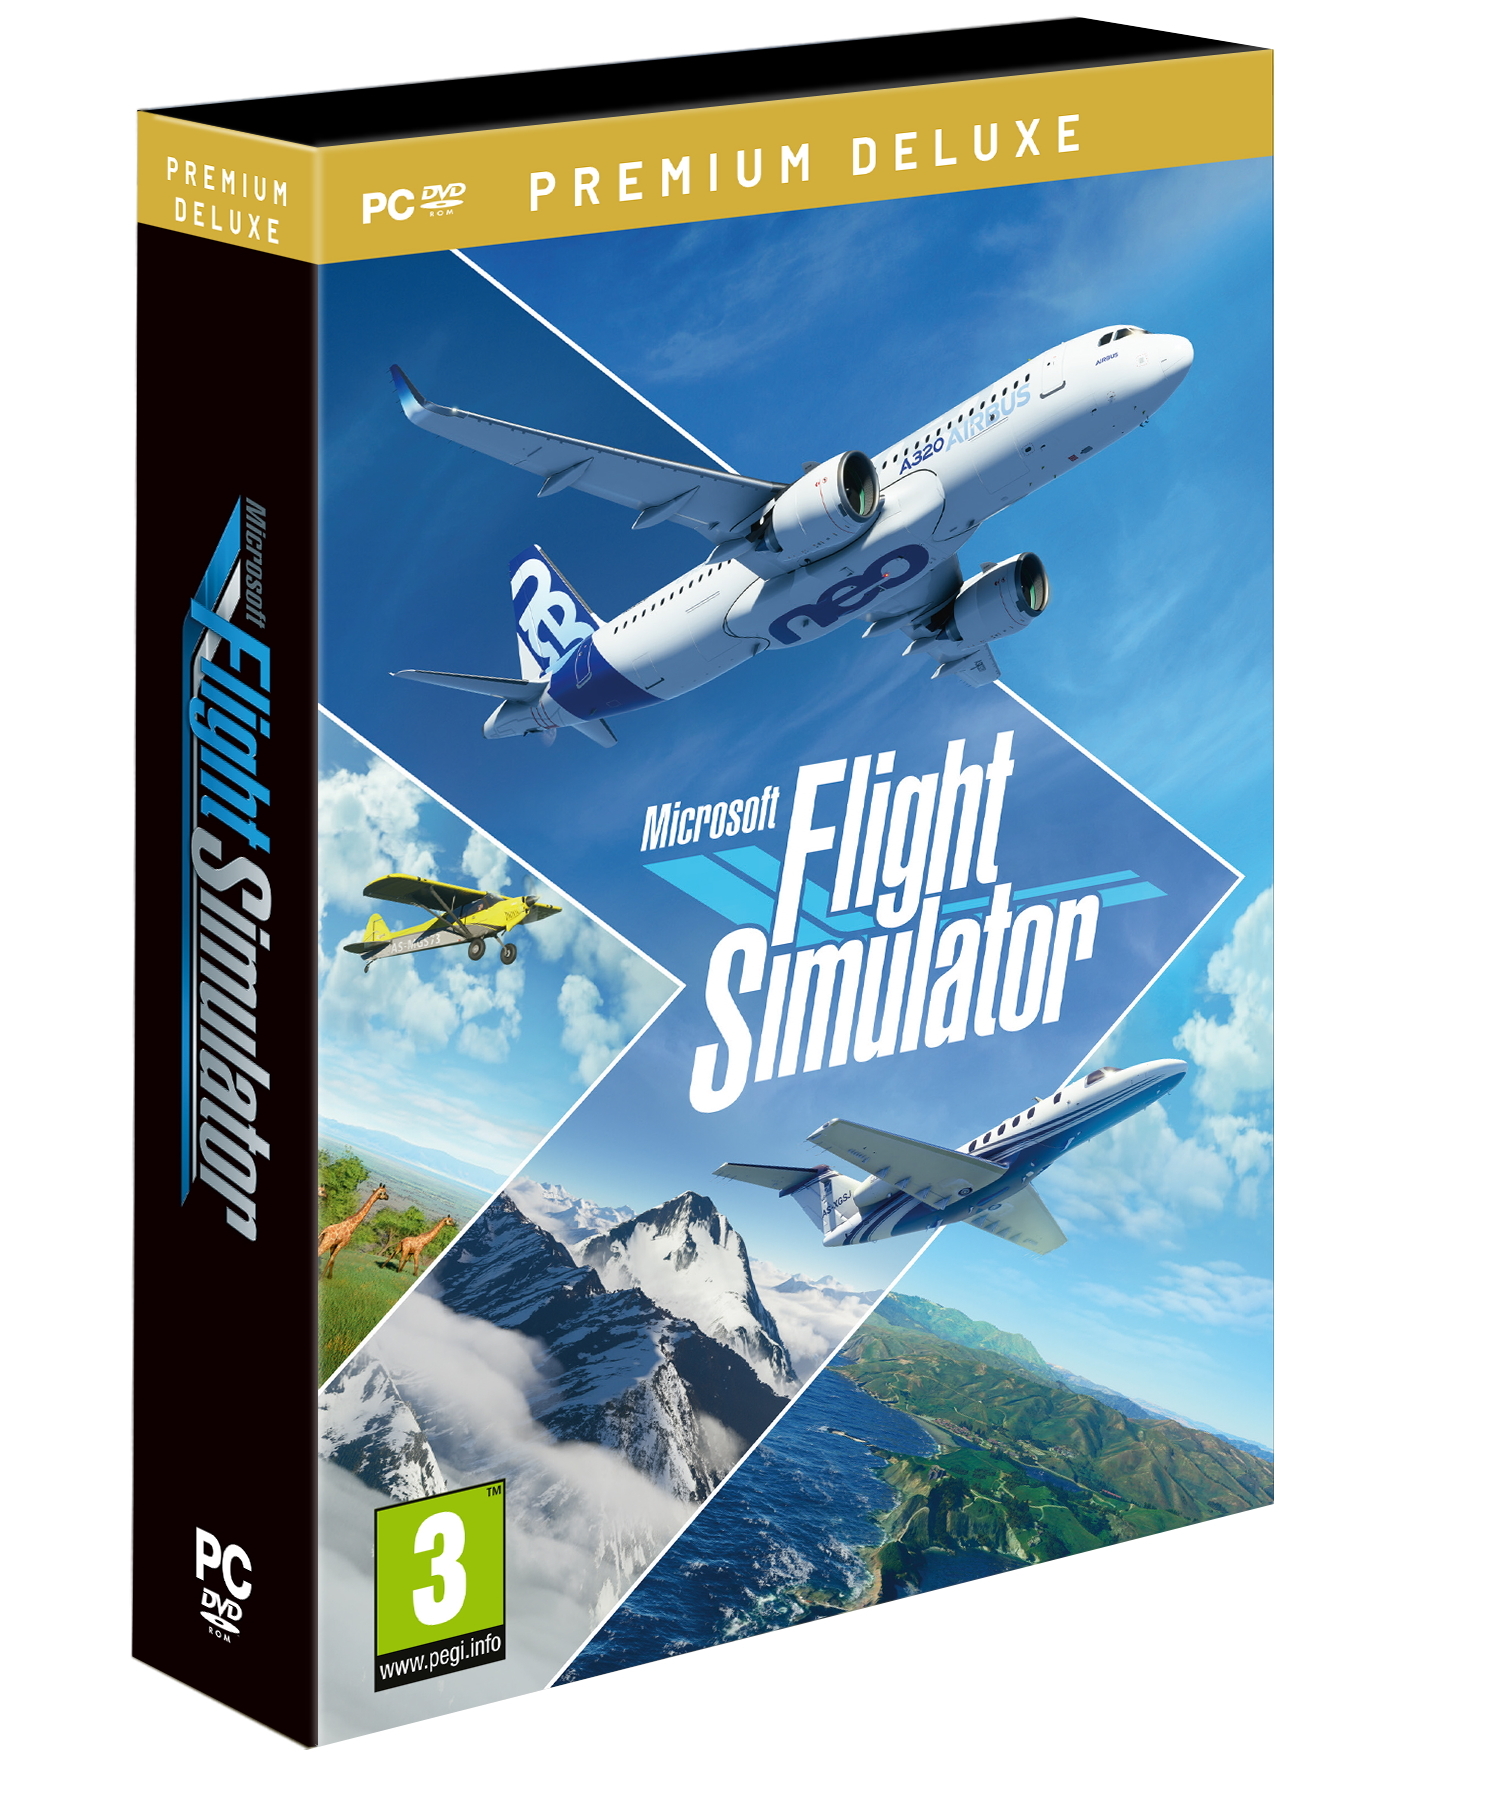 Microsoft Flight Simulator: Premium Deluxe Edition PC